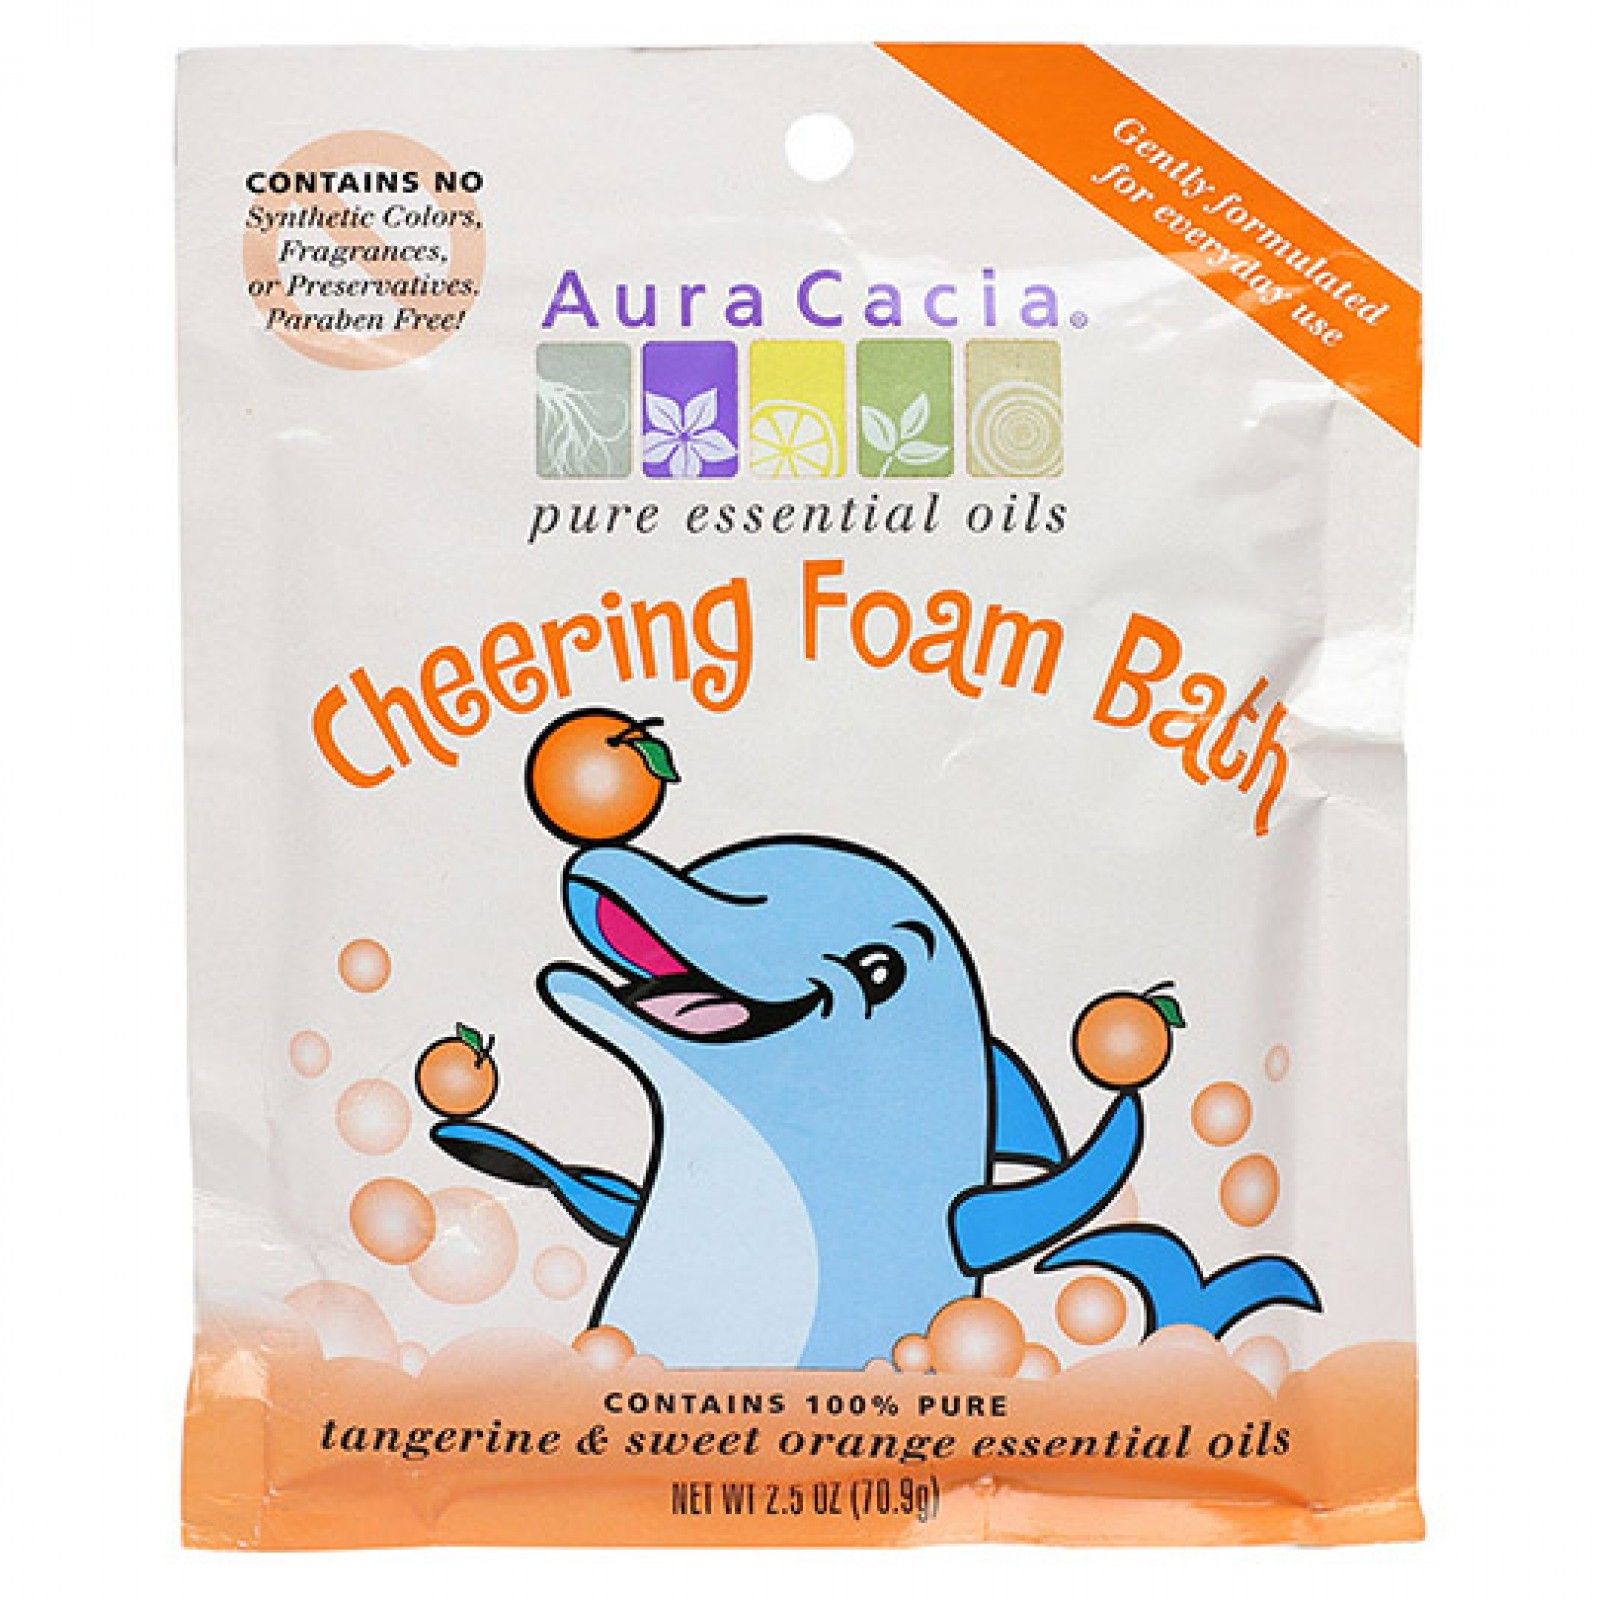 Aura Cacia - Cheering Tangerine & Sweet Orange Kids Foam Bath 2.5 Oz.